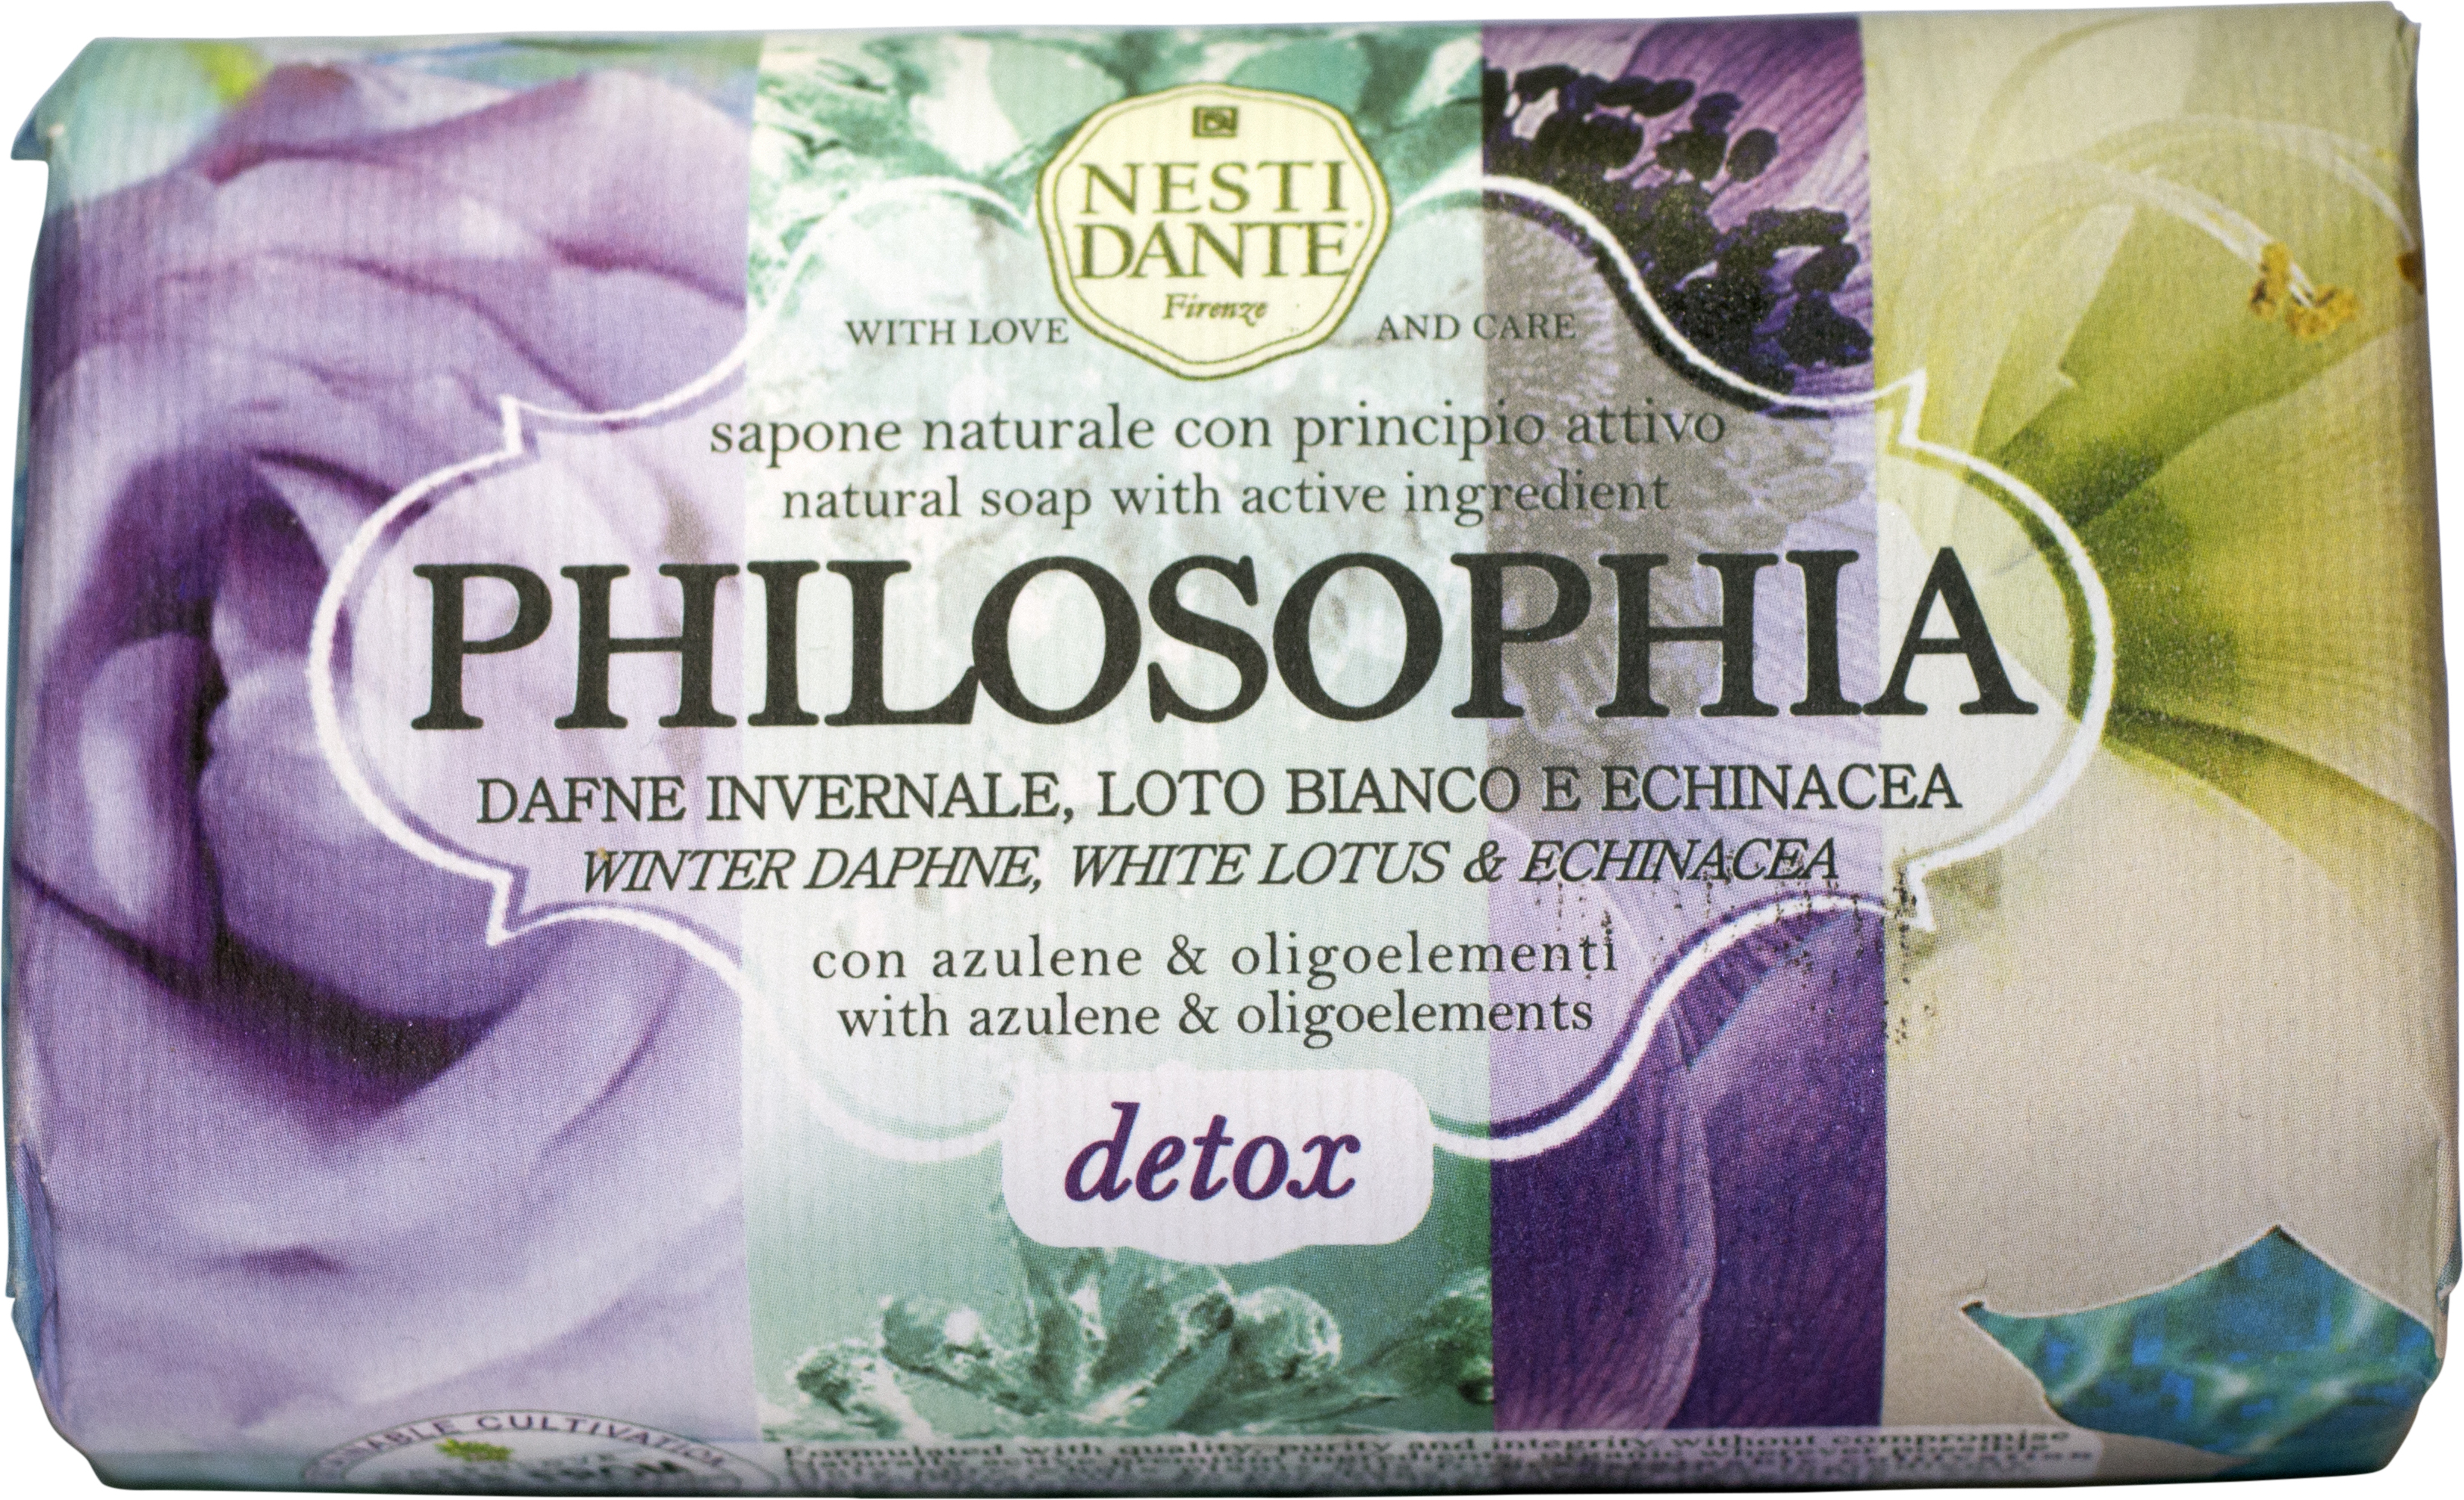 Nesti Dante Philosophia Detox 250 g